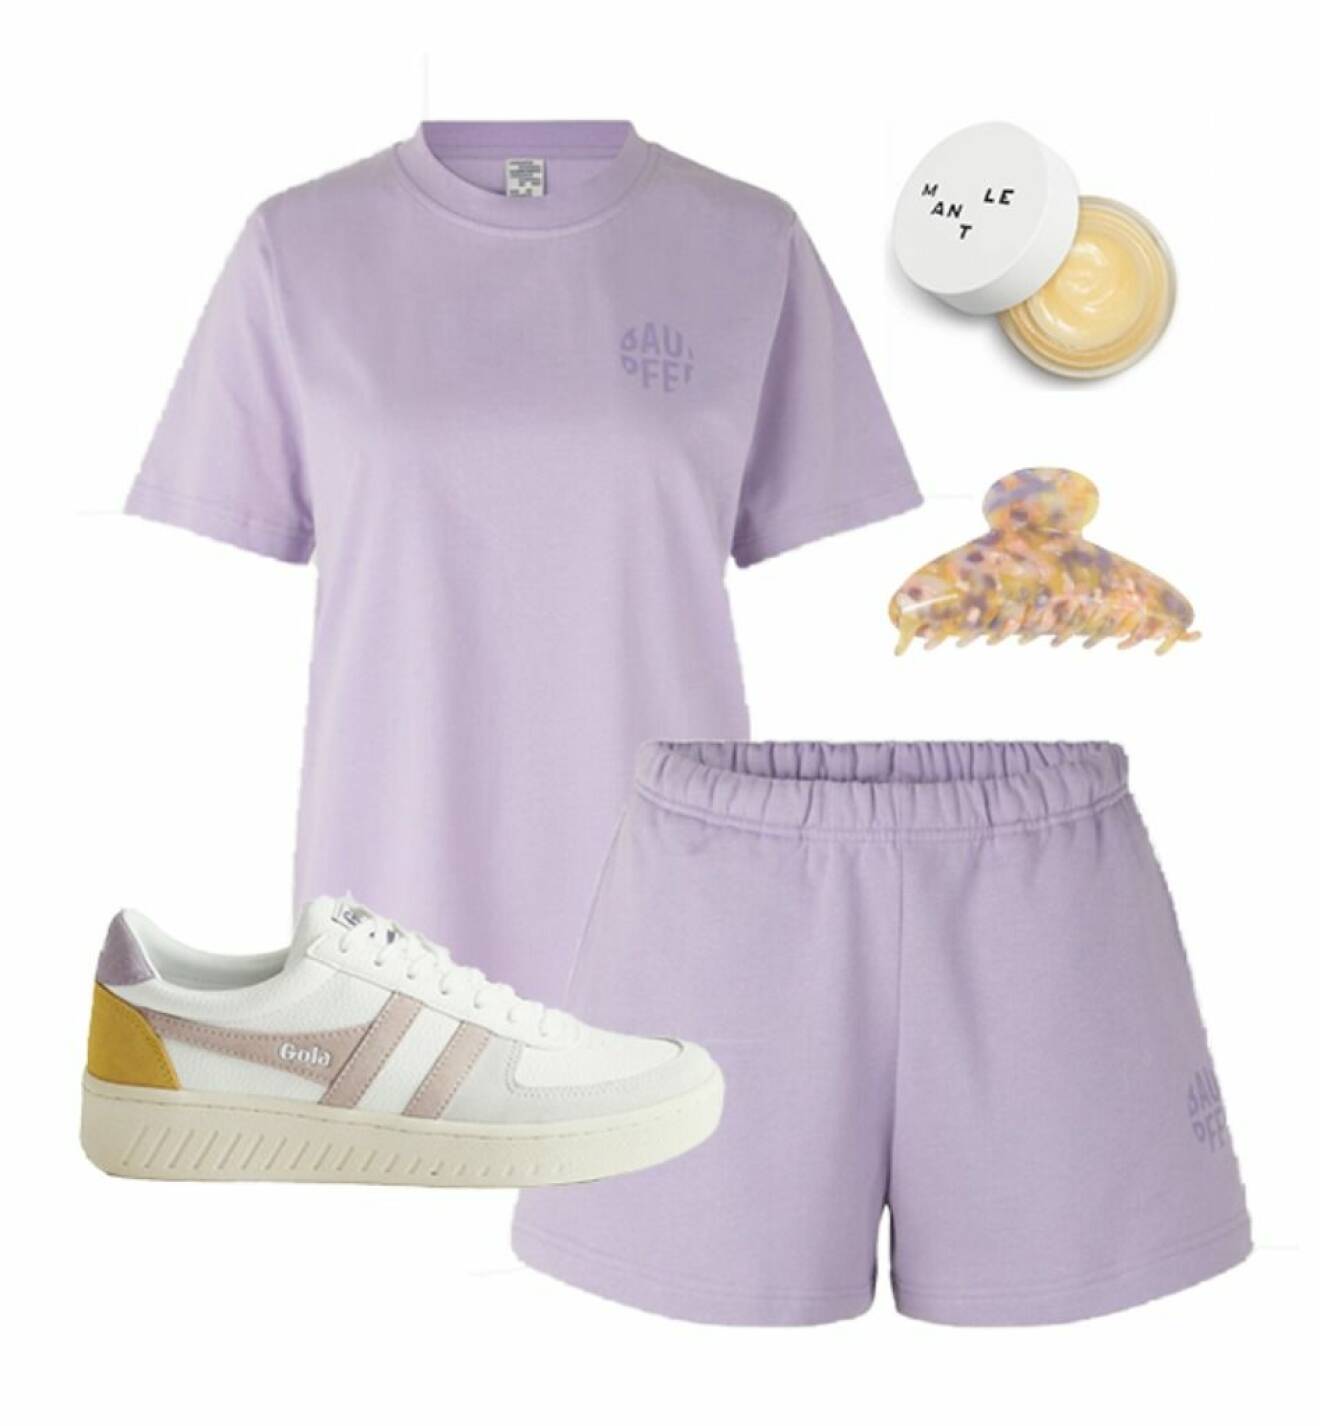 Sportig look med lila set och sneakers i gul och rosa.